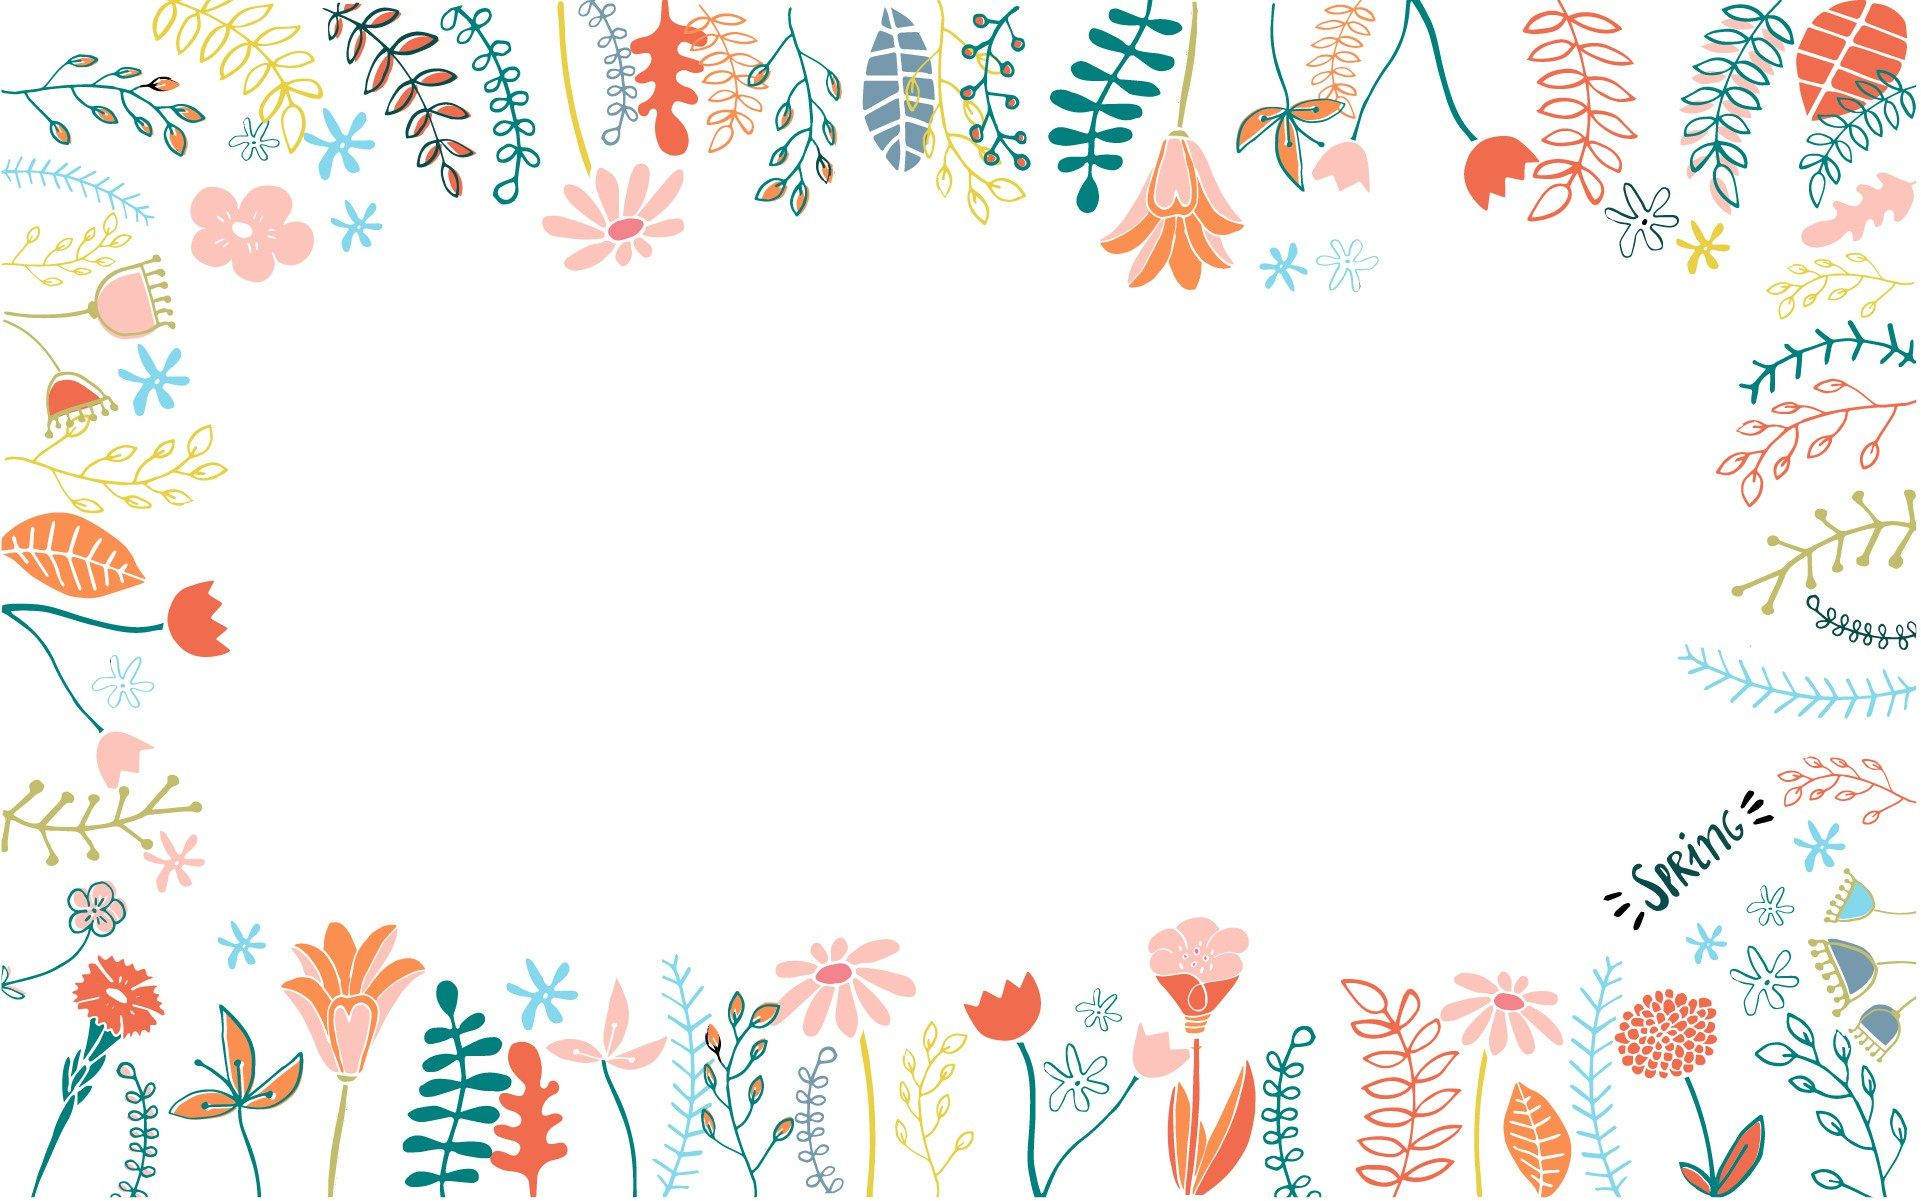 Spring-inspired Floral Desktop Wallpaper